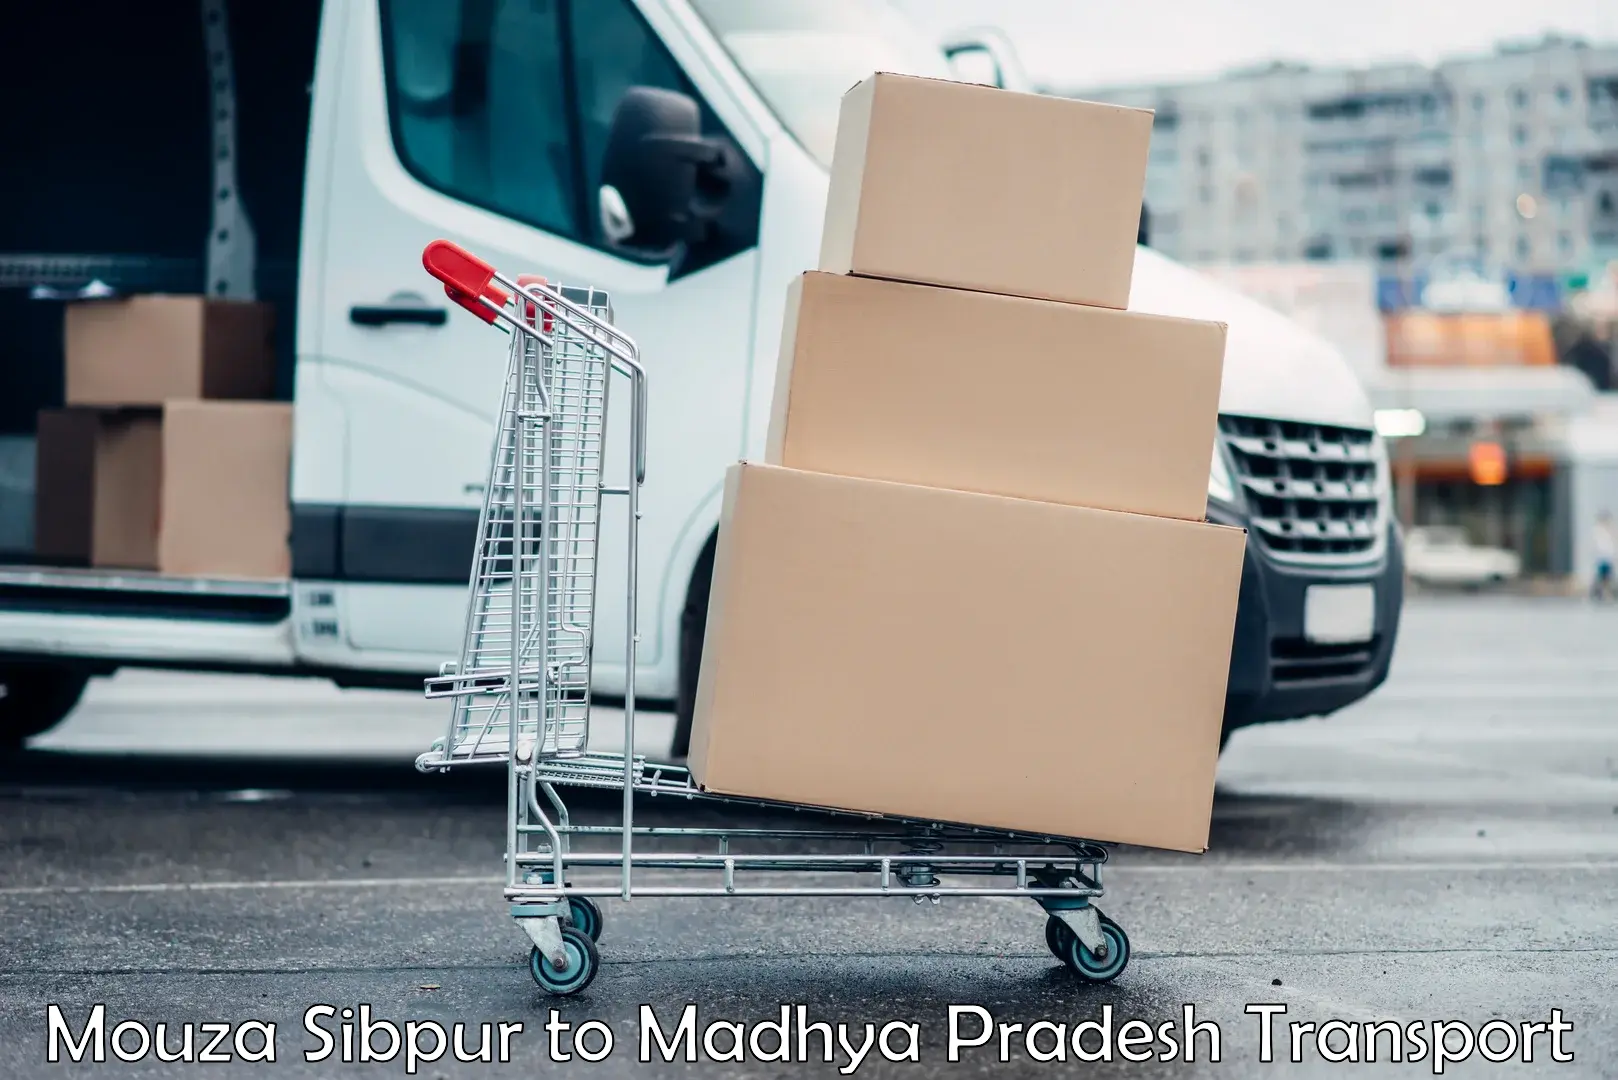 Pick up transport service Mouza Sibpur to Khajuraho